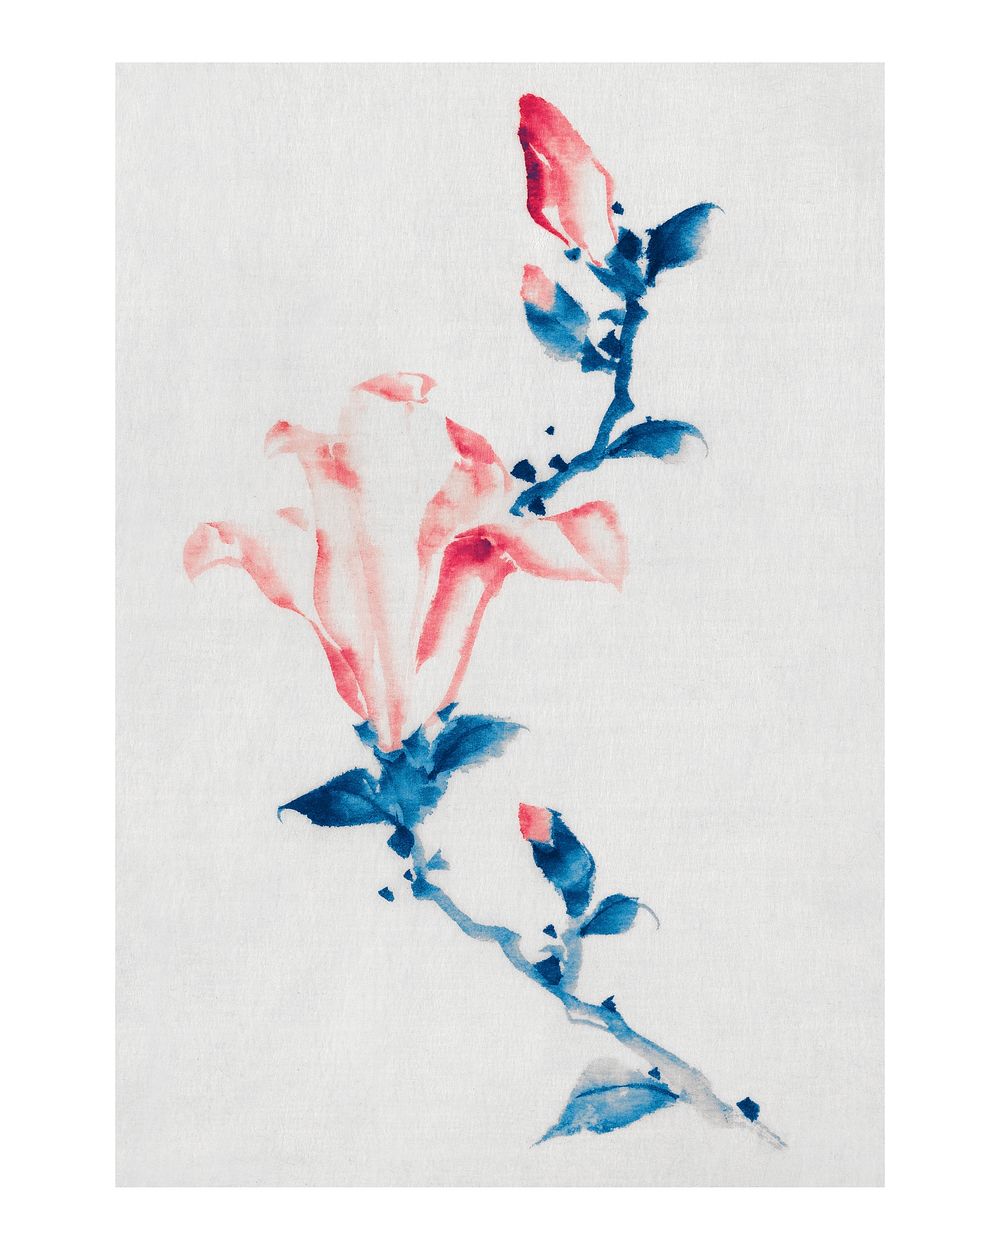 Blooming flower vintage wall art print poster design remix from original artwork by Katsushika Hokusai.